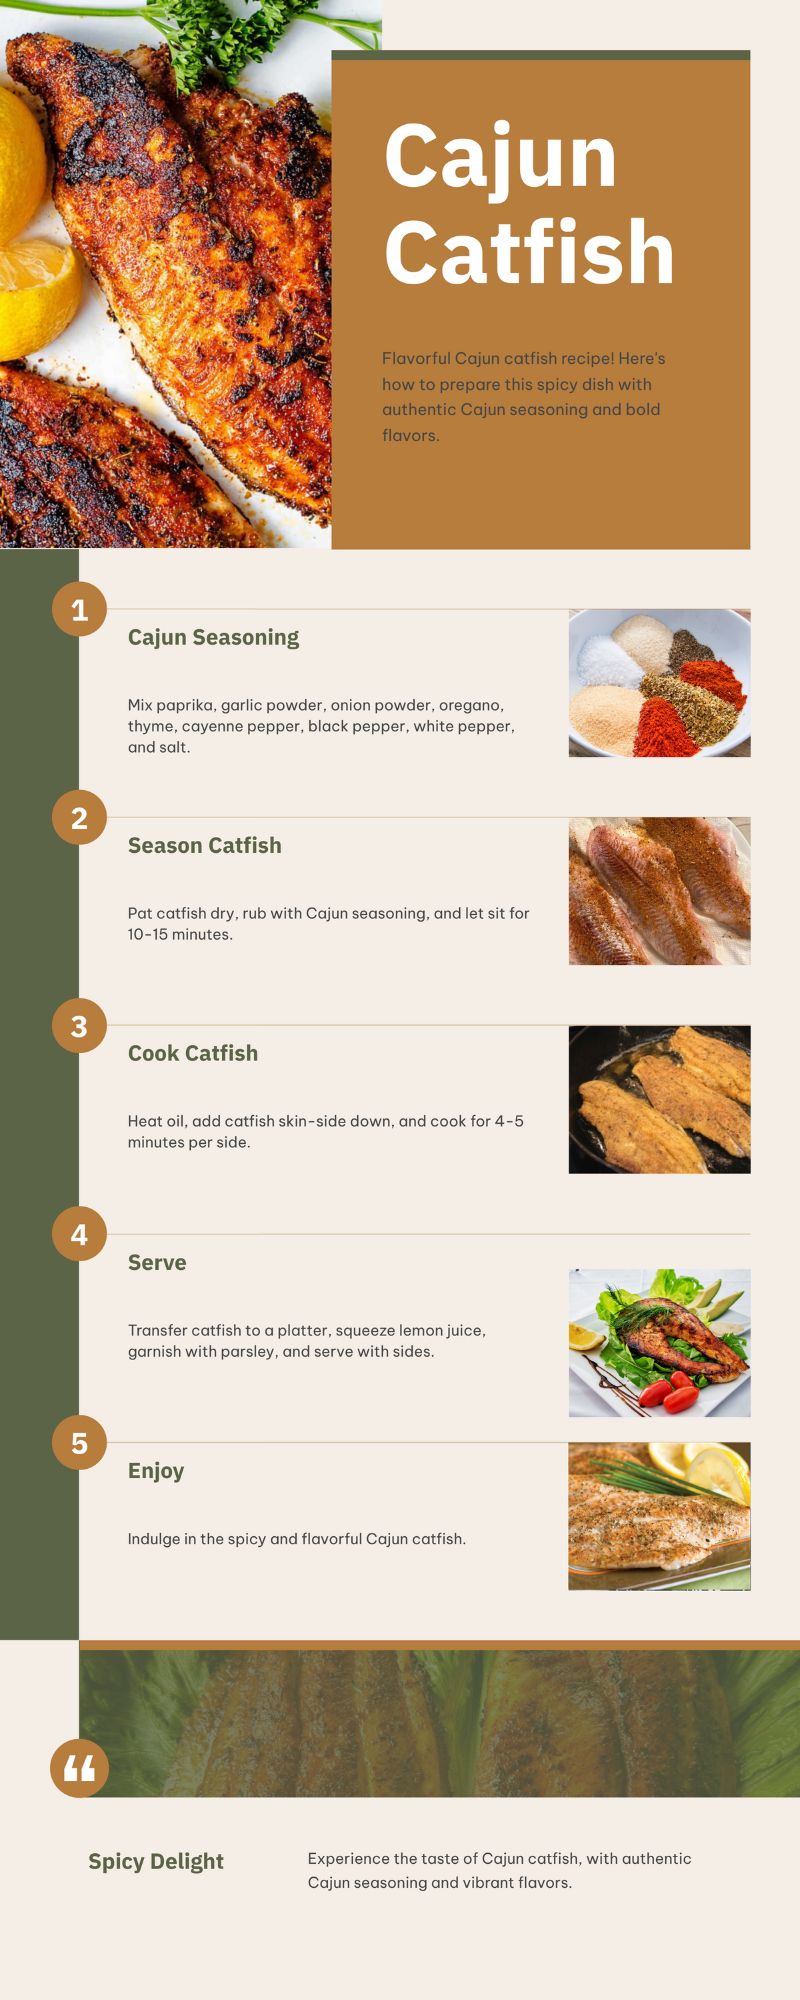 Best Cajun catfish recipe